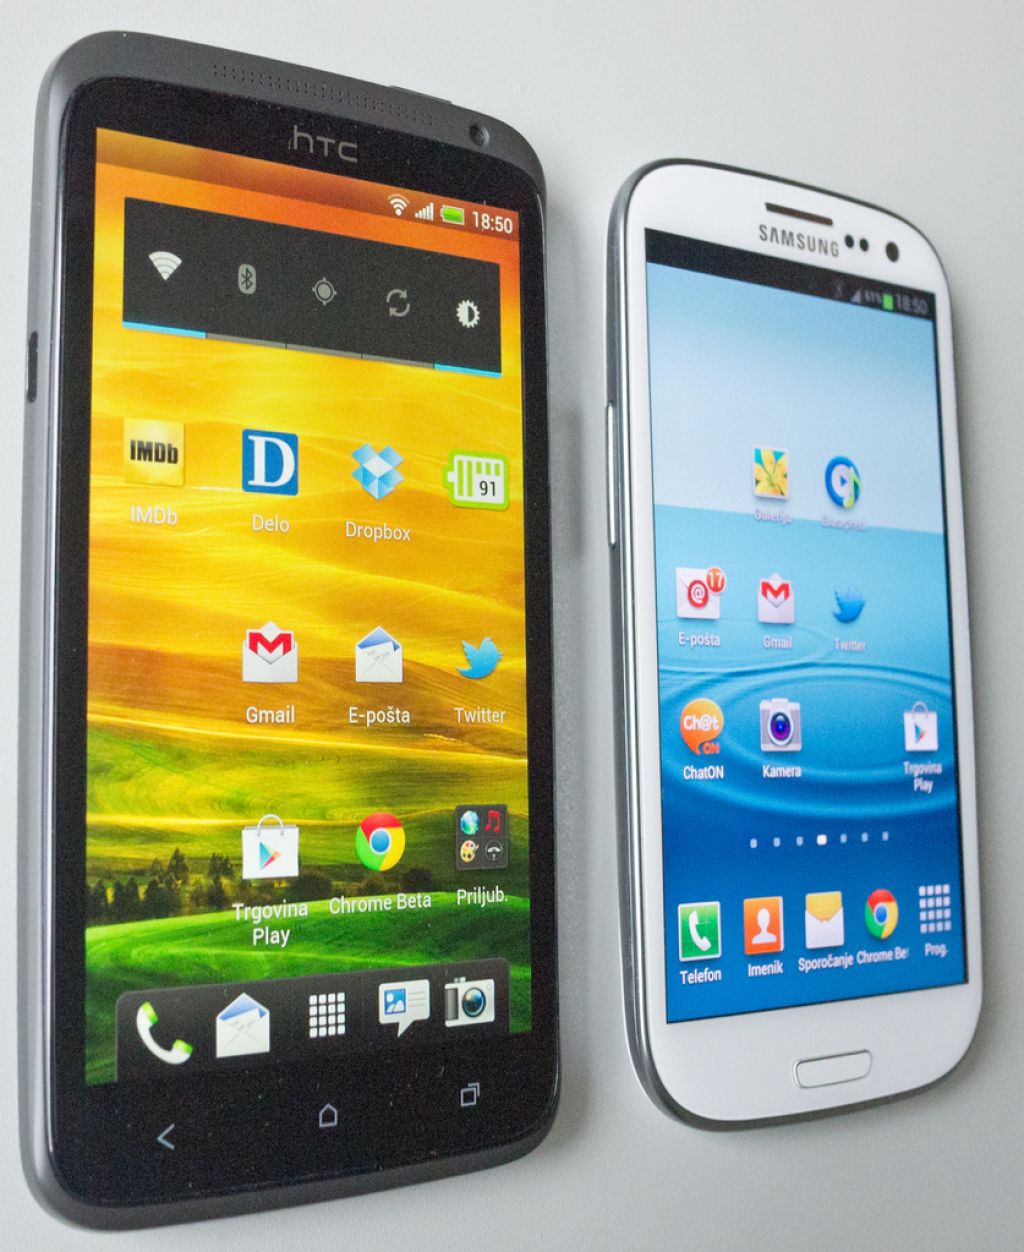 Veliki preizkus: HTC one x proti Samsungu galaxy s3